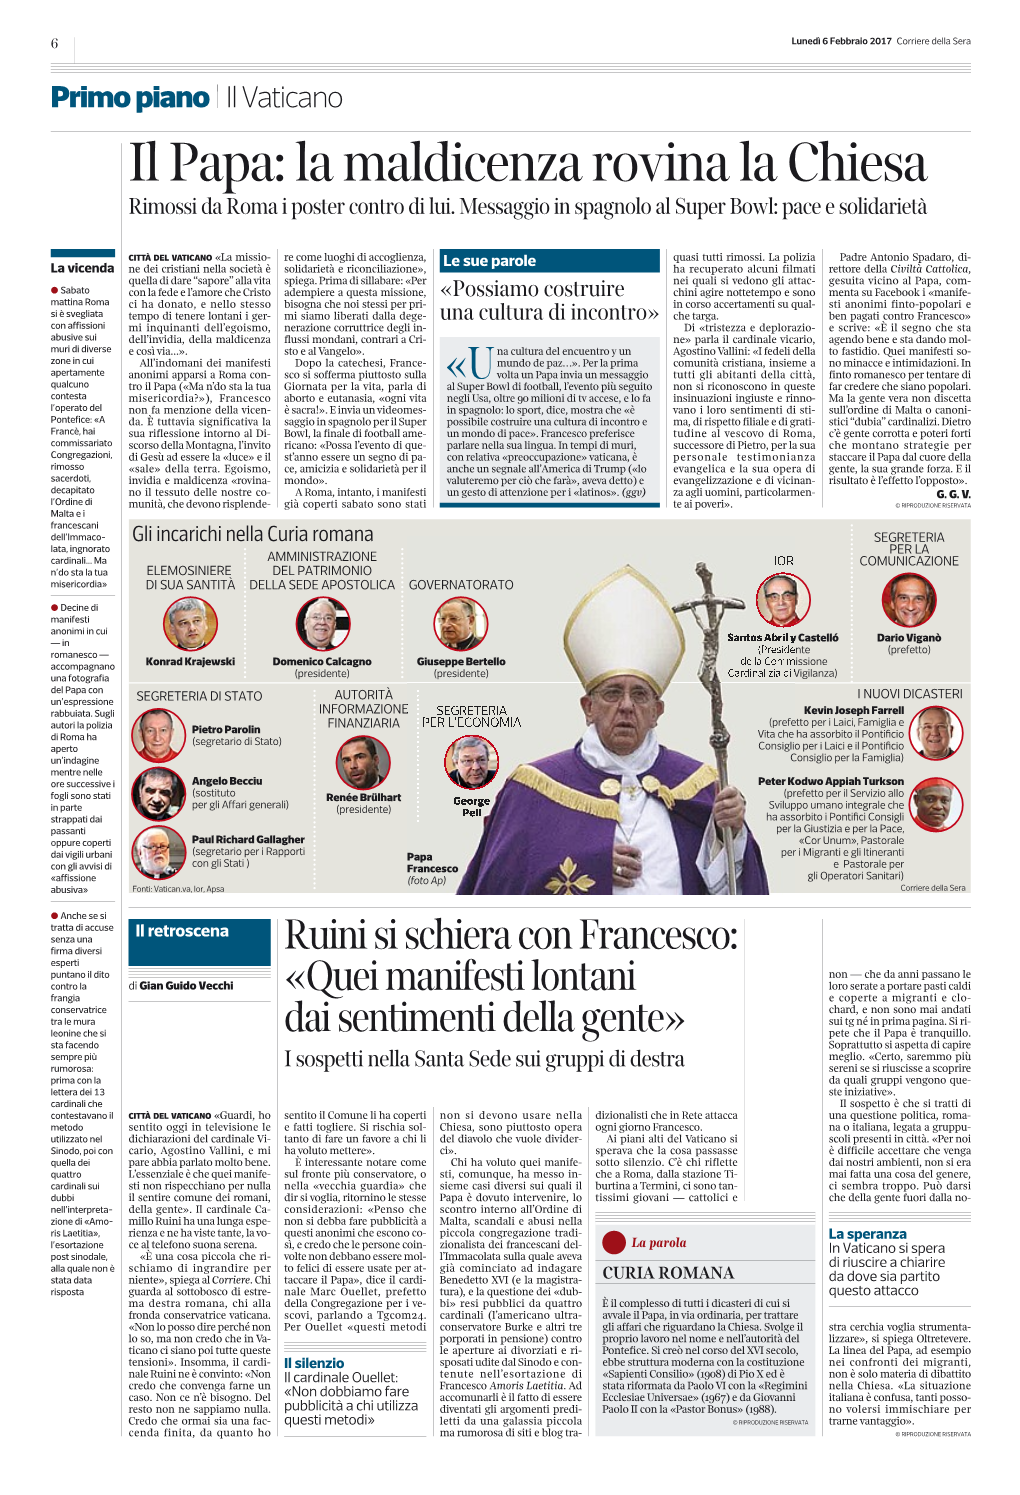 Il Papa: La Maldicenza Rovina La Chiesa Rimossi Da Roma I Poster Contro Di Lui